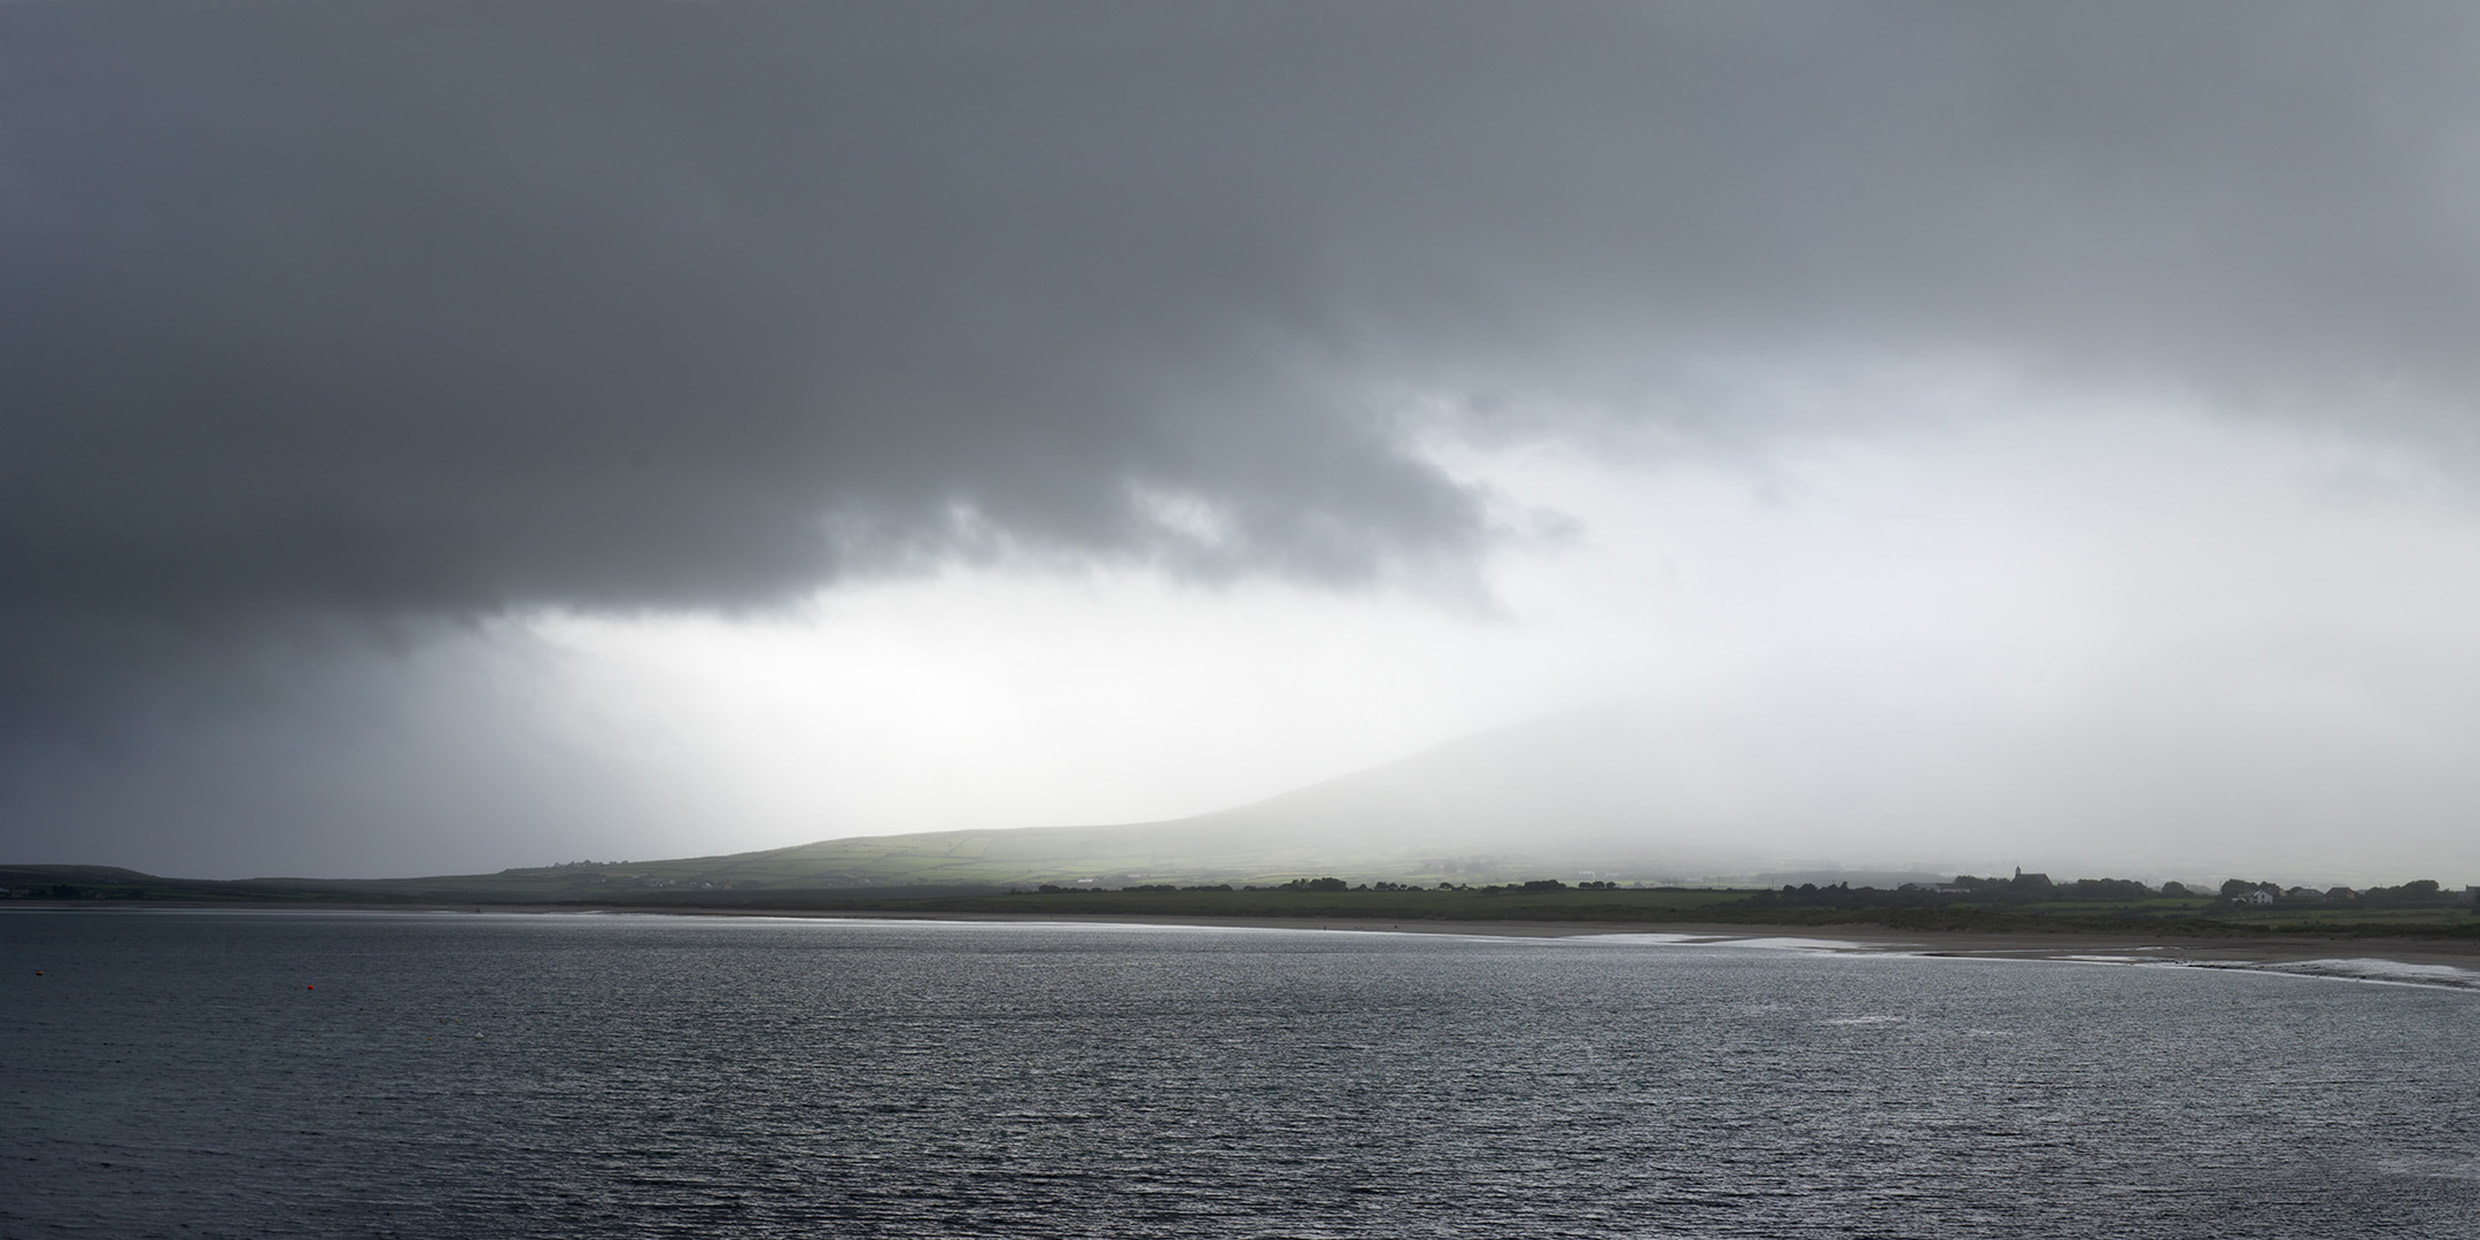 Image of a rainy landscape on the Irish coast